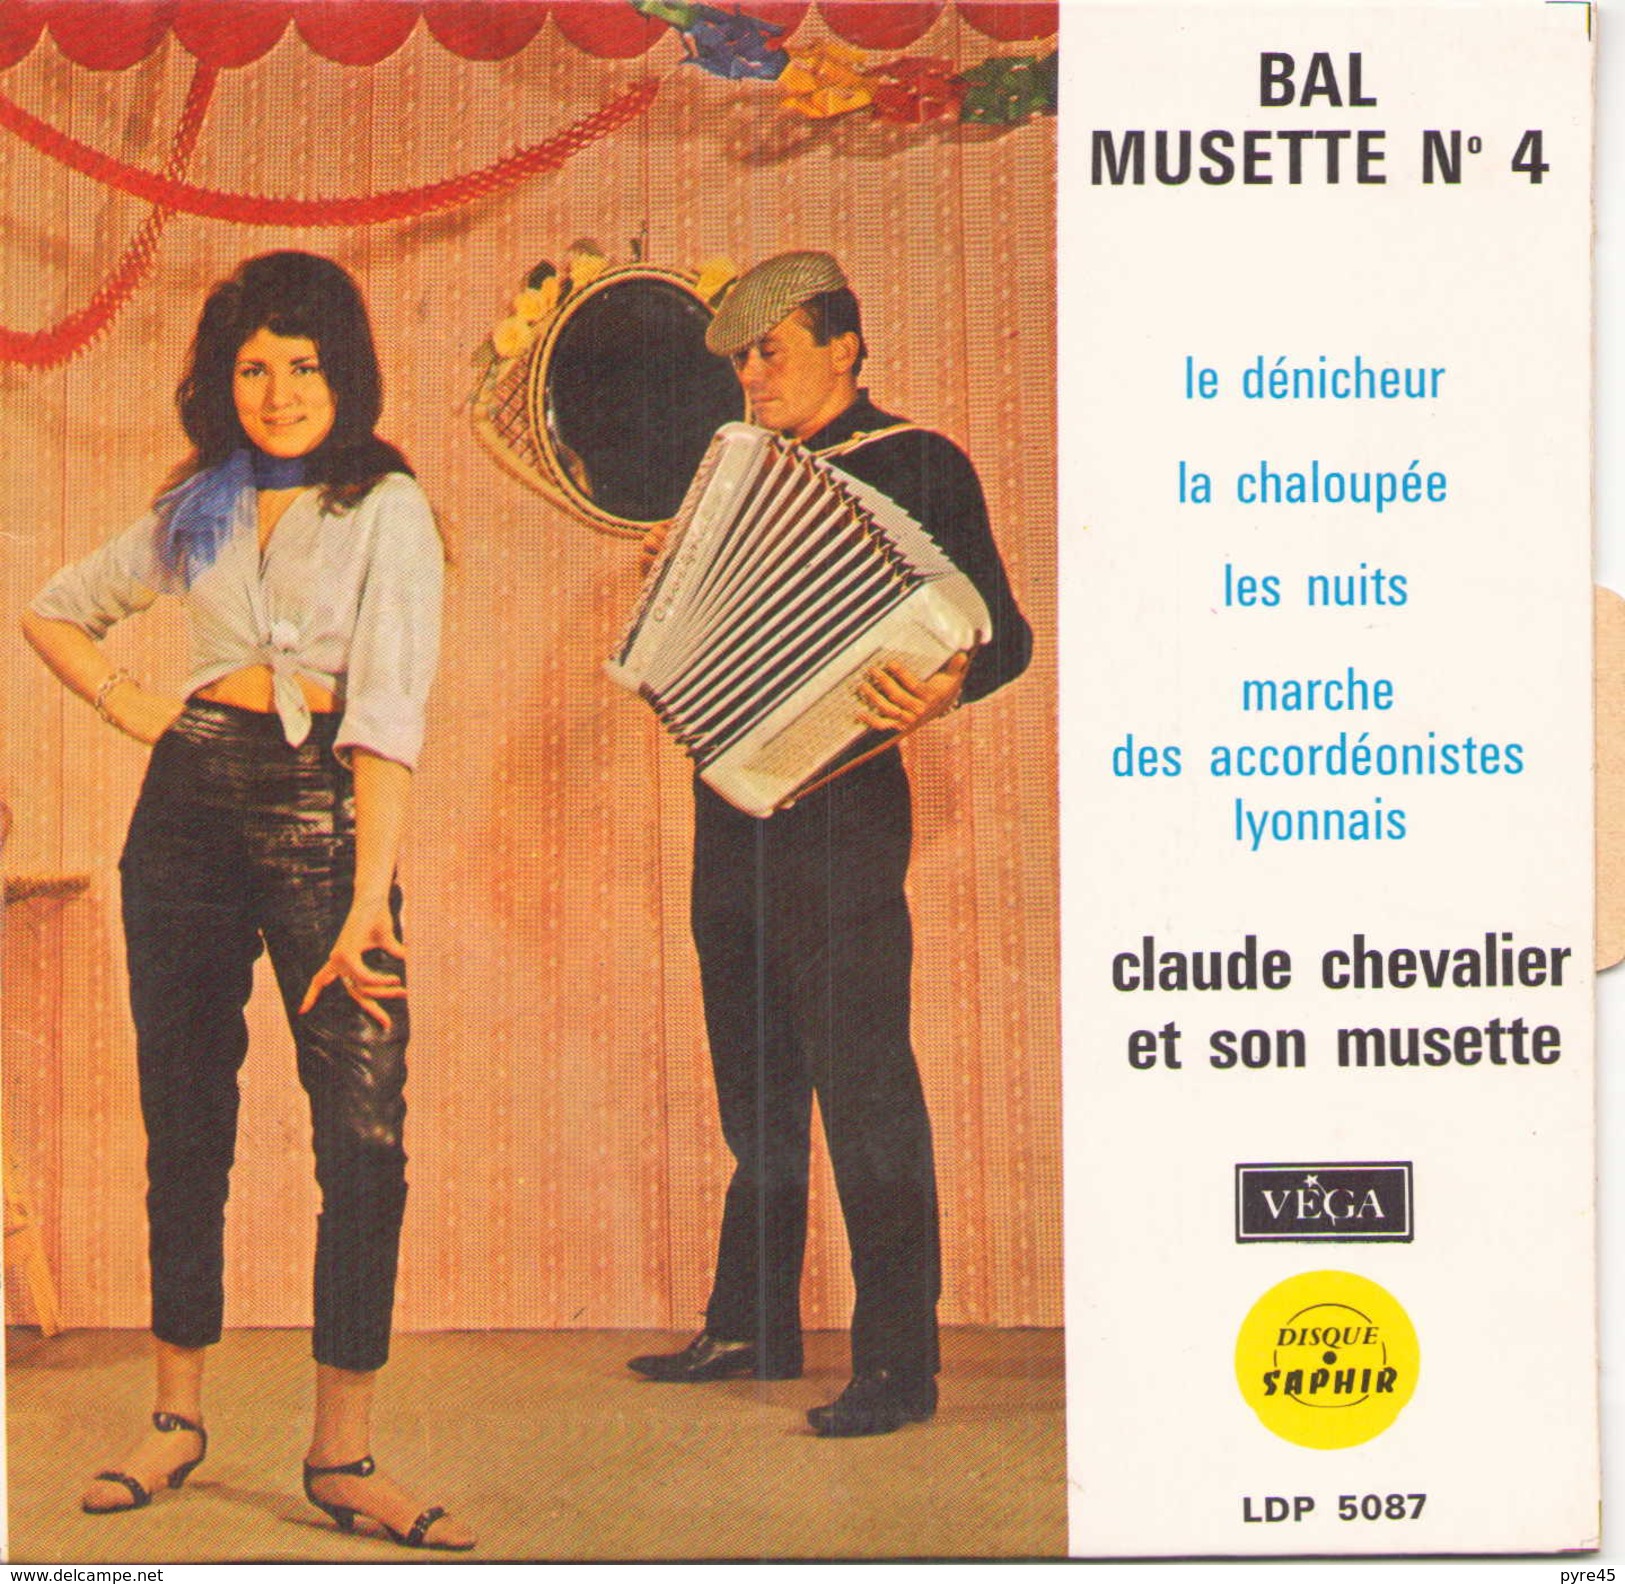 EP 45 TOURS CLAUDE CHEVALIER BAL MUSETTE N° 4 LE DENICHEUR / LA CHALOUPEE + 2 VEGA LDP 5087 - Humor, Cabaret